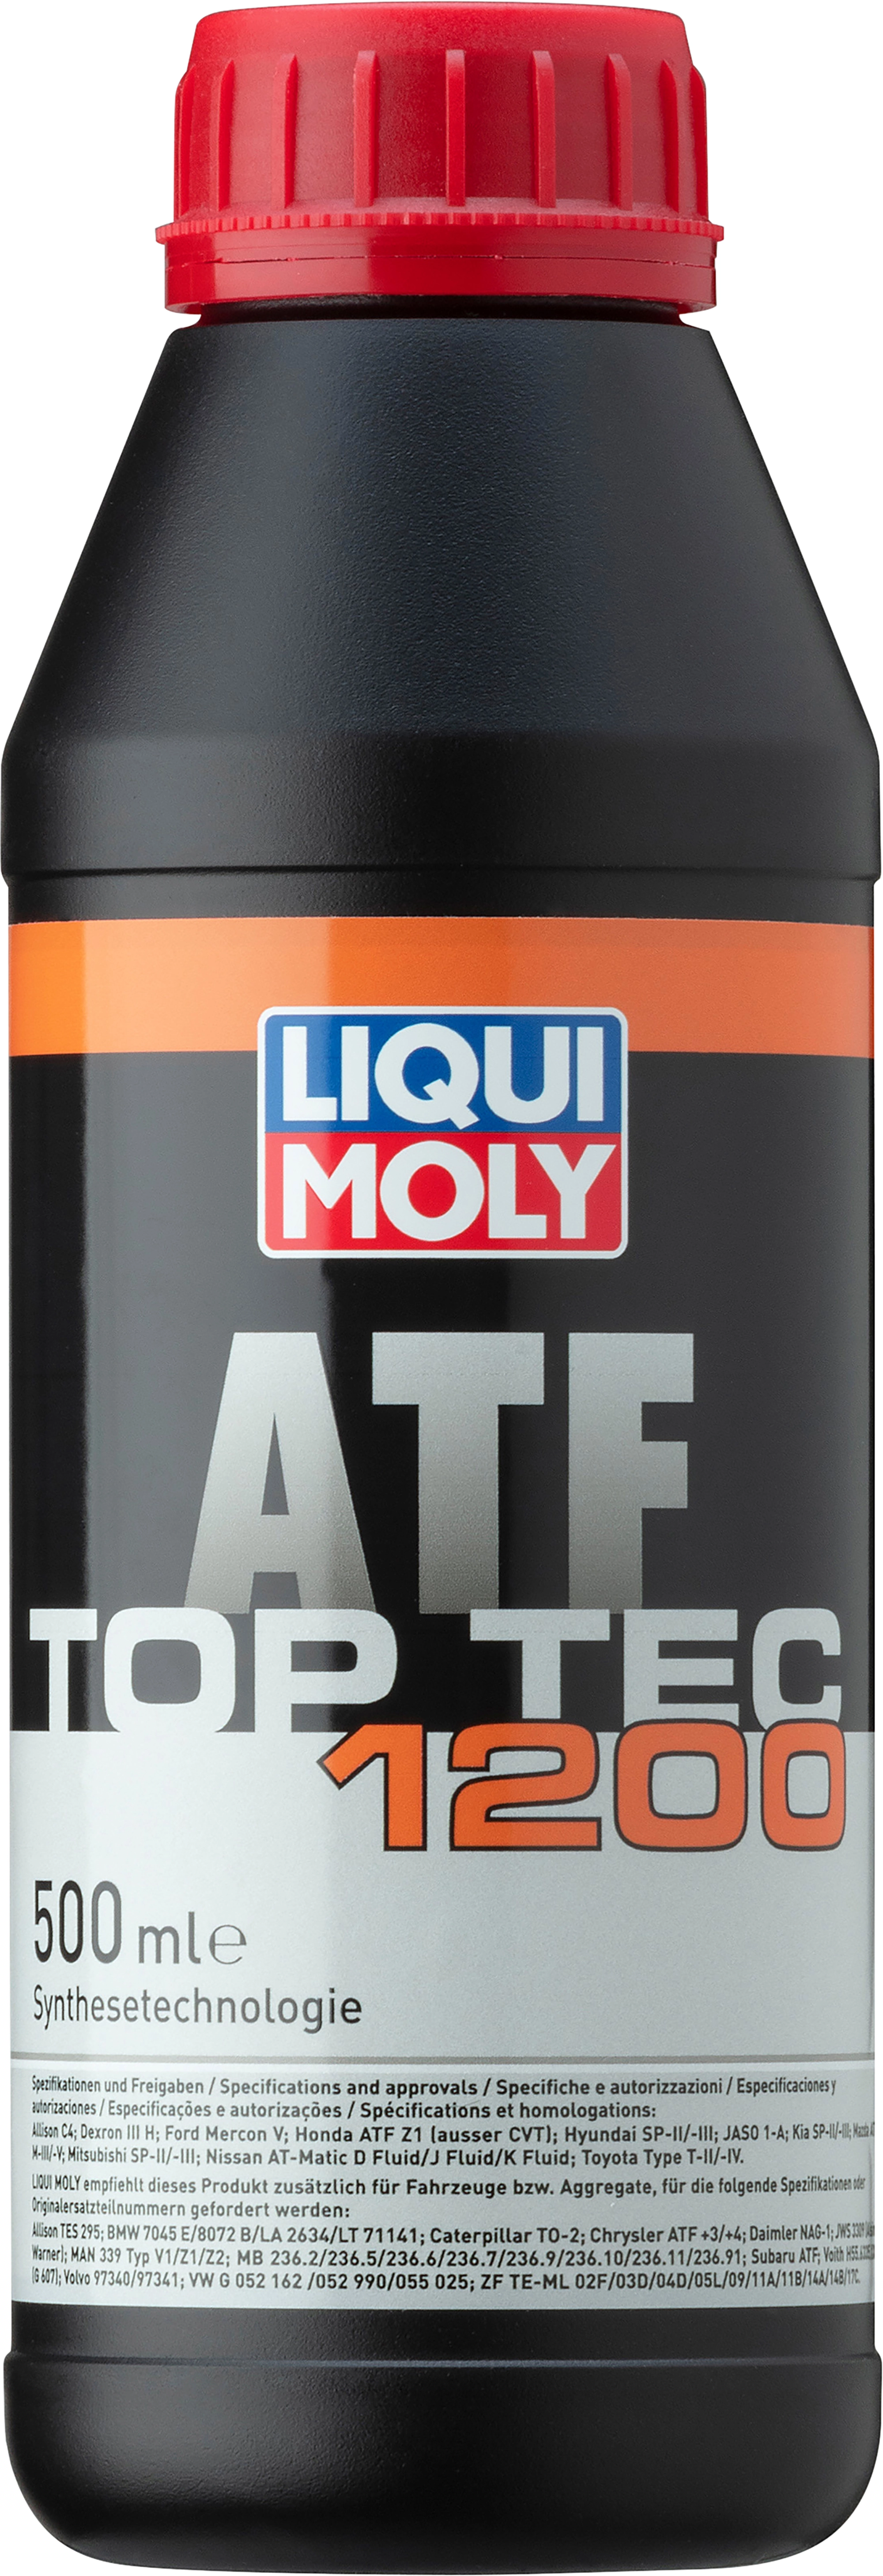 Liqui Moly Top Tec ATF 1200 500 ml kaufen bei OBI